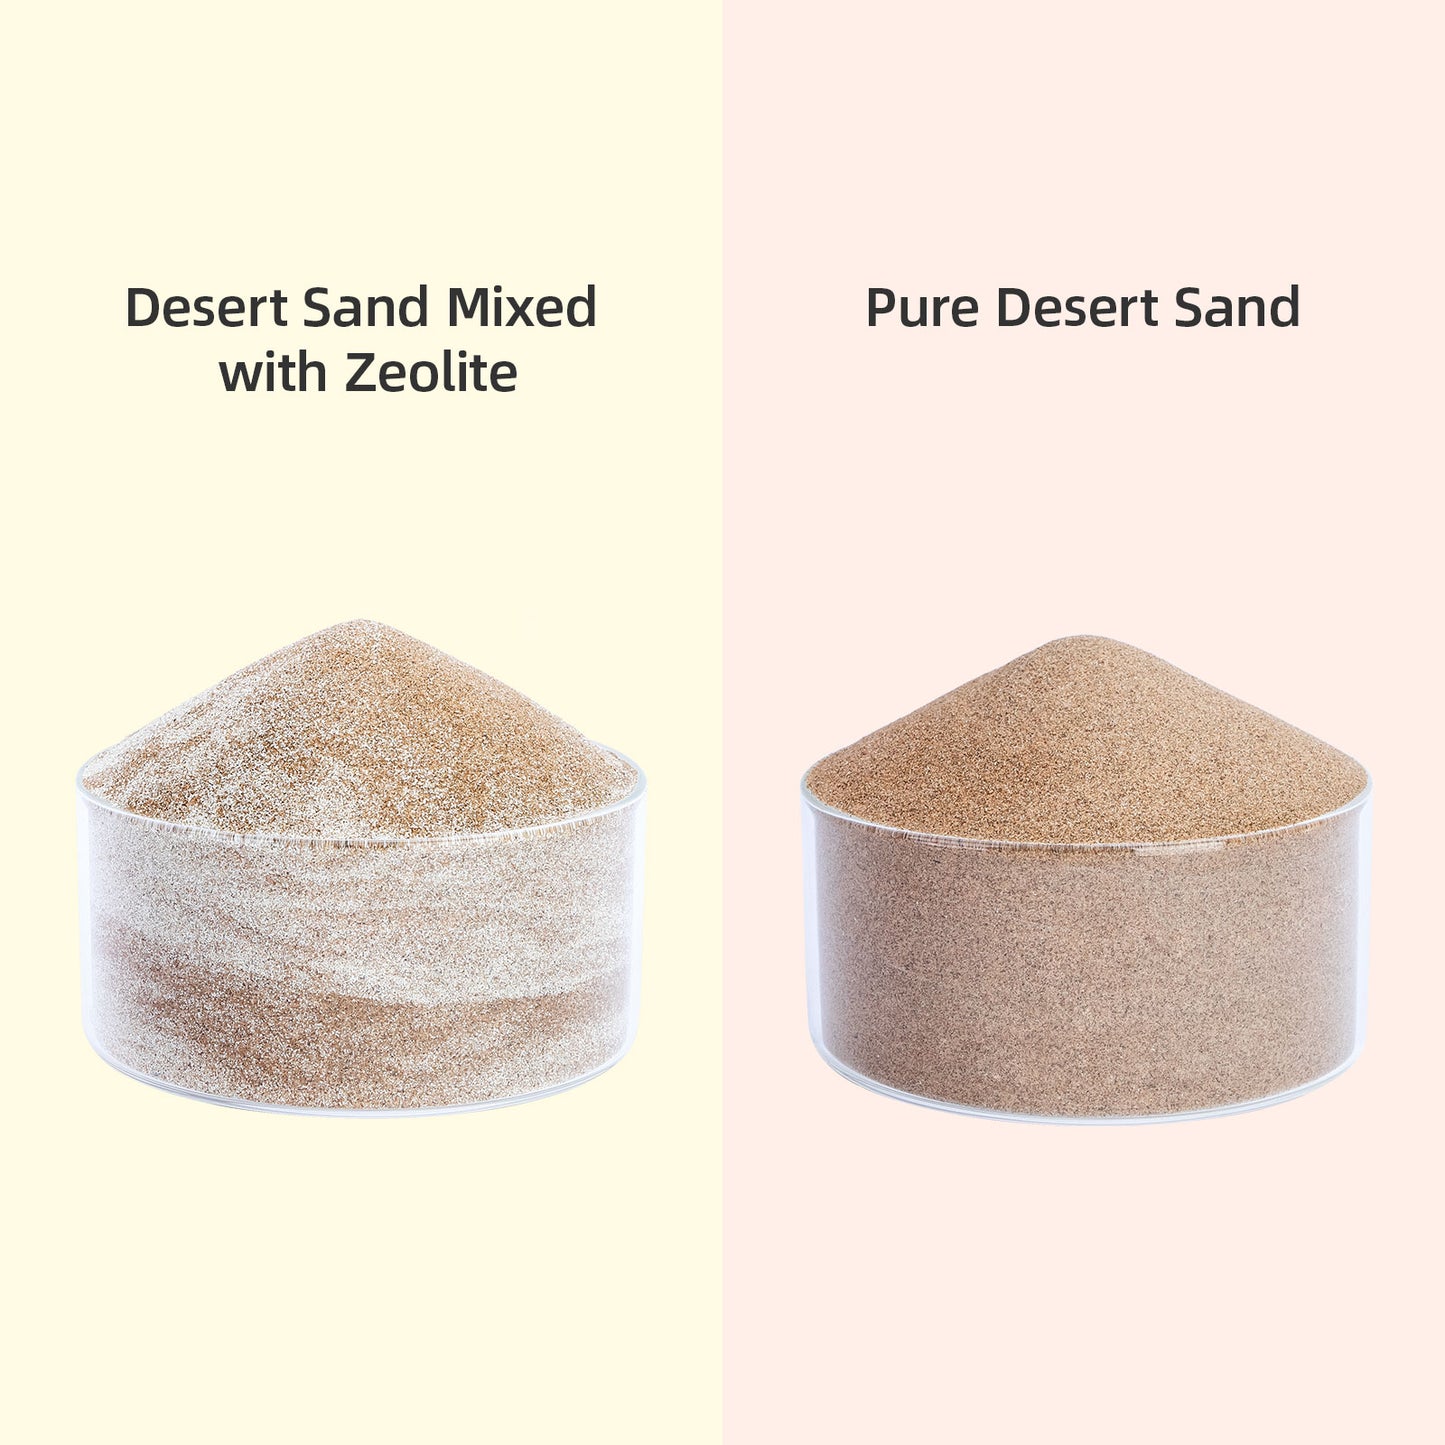 Niteangel Desert Bathing Desert Sand for Hamster Gerbil Mice or Other Small Pets - Niteangel Pet CA